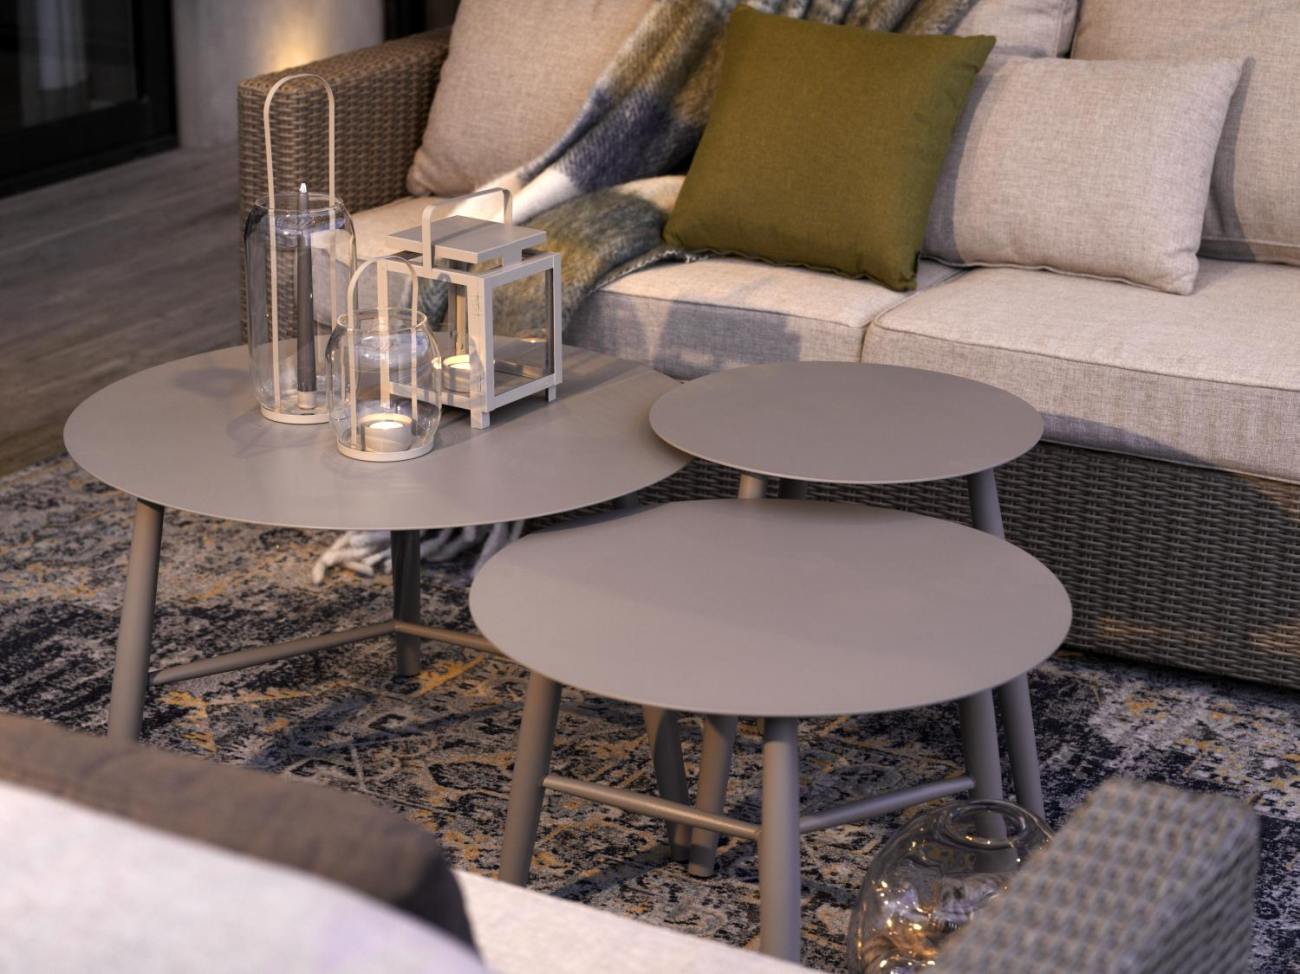 Der Gartenbeistelltisch Vannes überzeugt mit seinem modernen Design. Gefertigt wurde die Tischplatte aus Metall, welche einen Kaki Farbton besitzt. Das Gestell ist auch aus Metall und hat eine Kaki Farbe. Der Tisch besitzt einen Durchmesser von 75 cm.